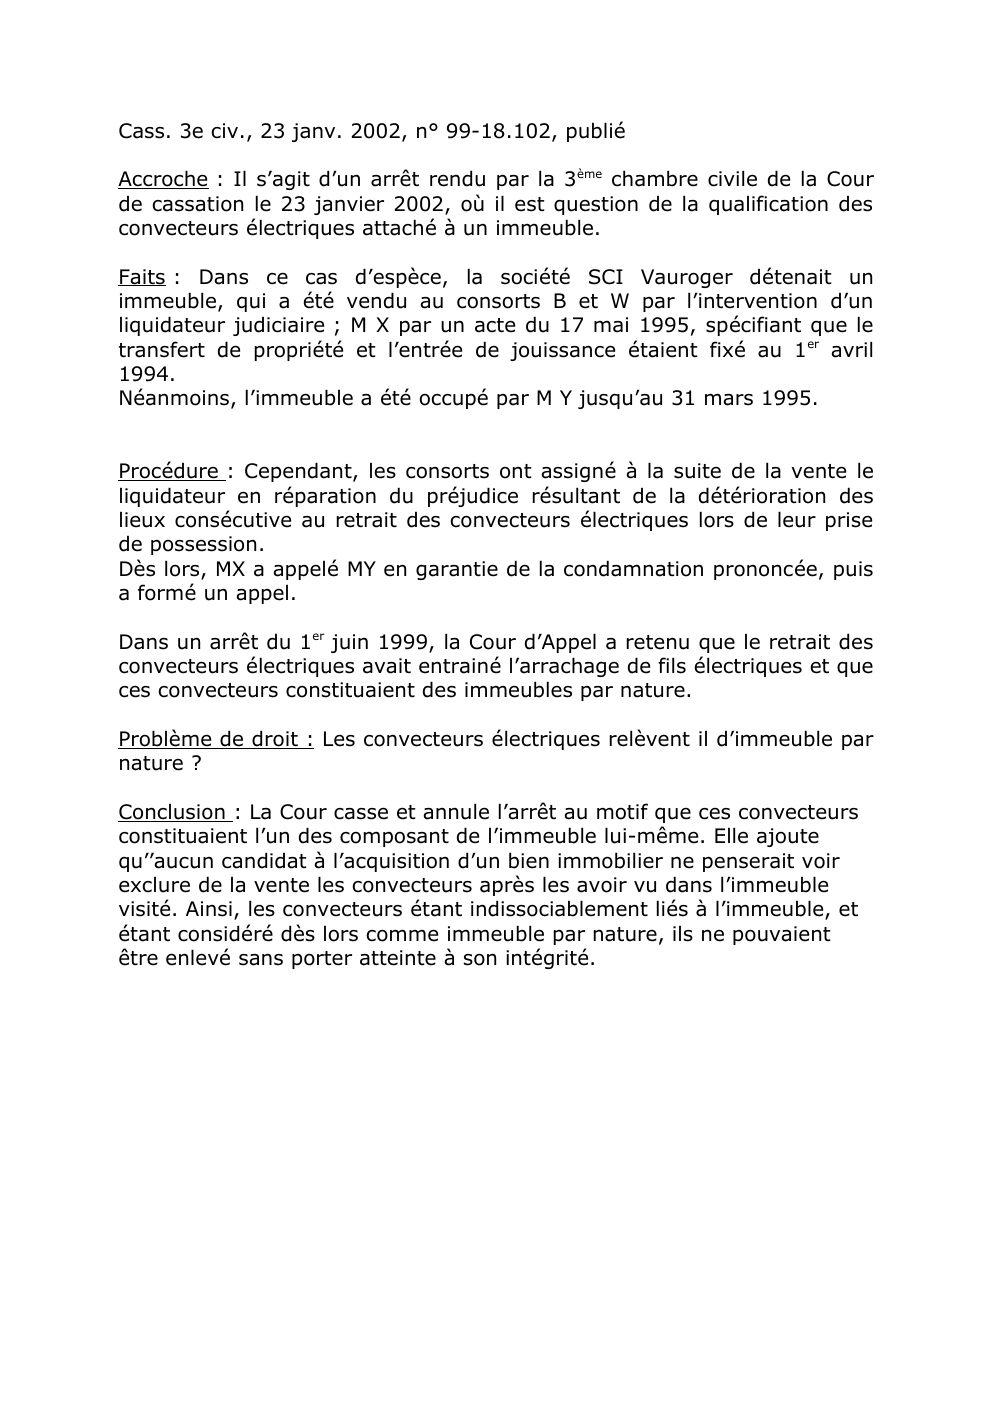 Prévisualisation du document droit des biens: Cass. 3e civ., 23 janv. 2002, n° 99-18.102, publié